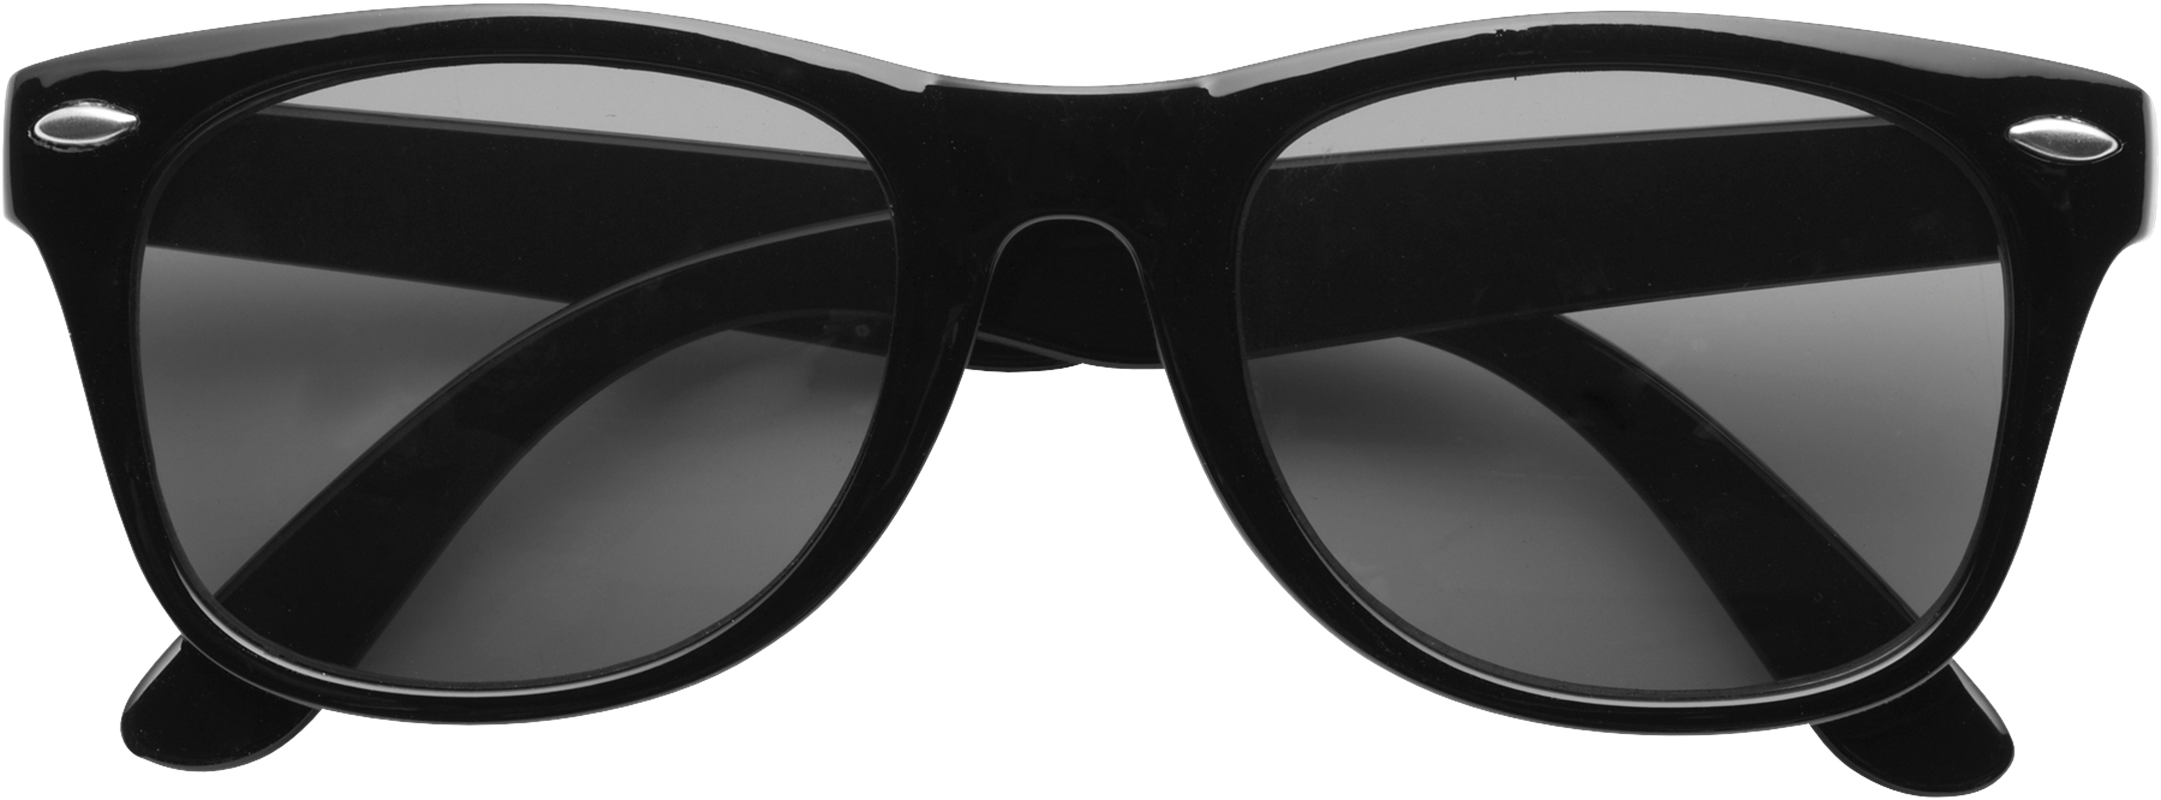 Classic sunglasses 9672_001 (Black)